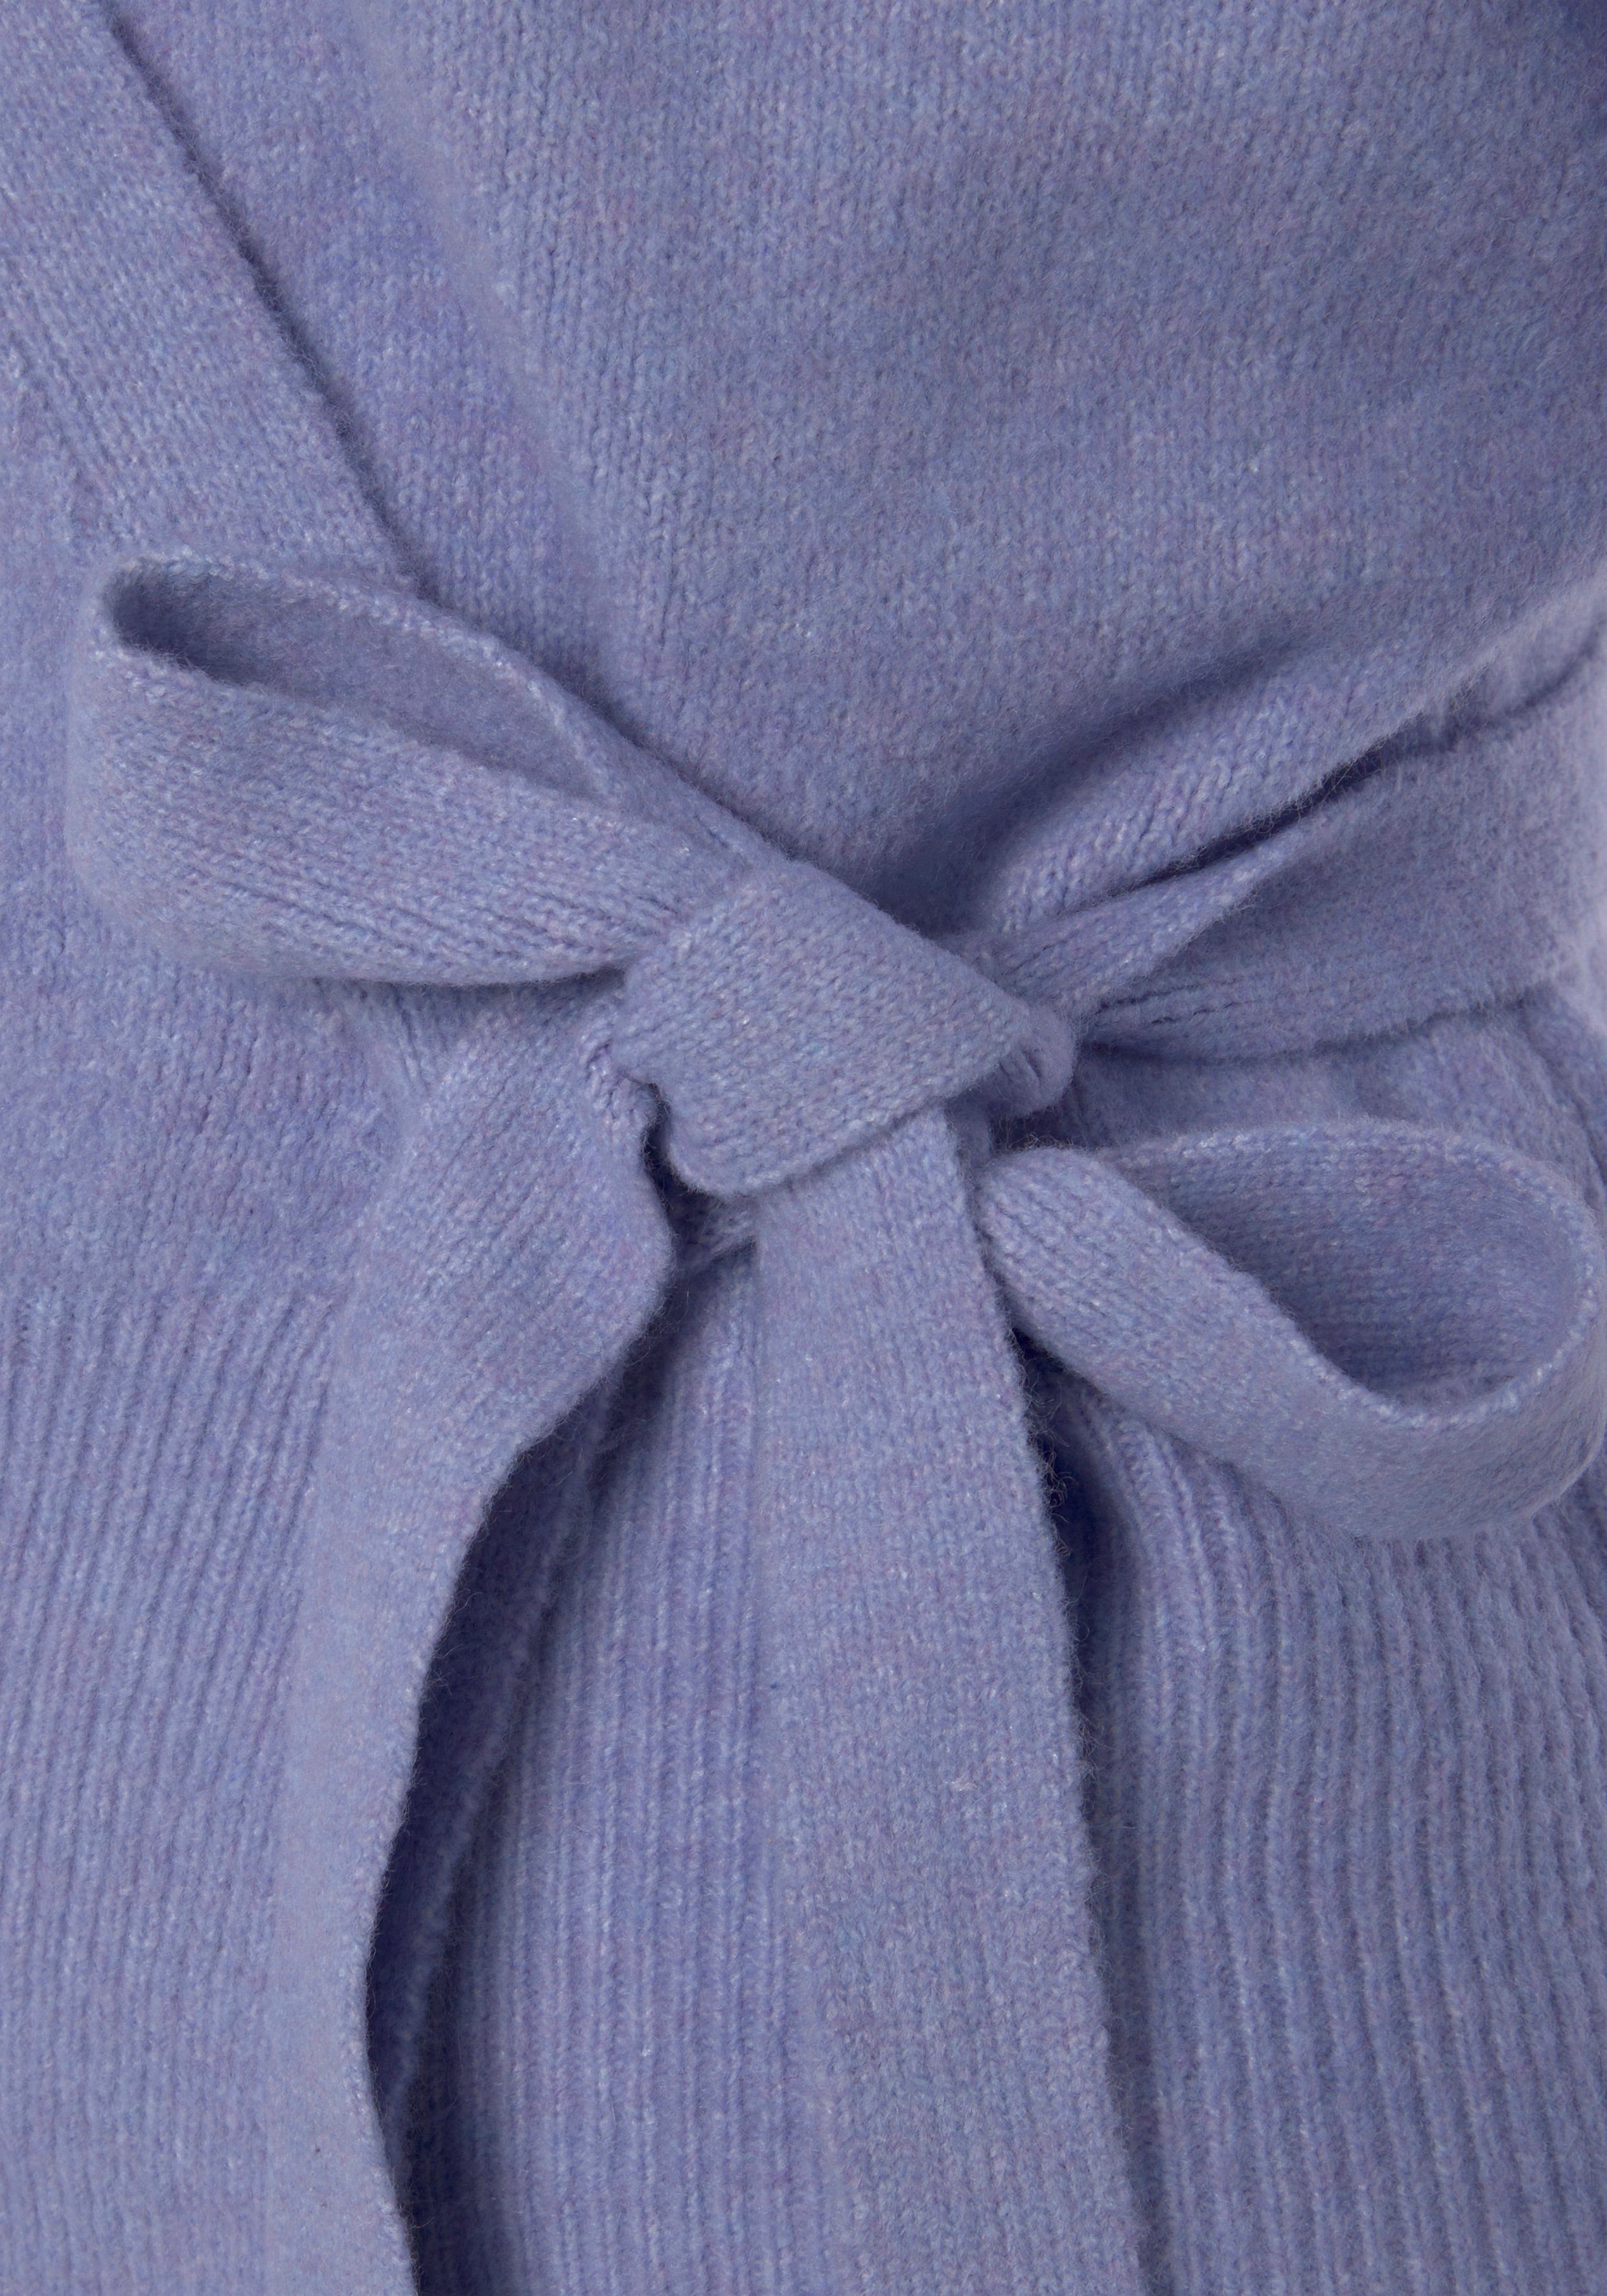 Rippbündchen, LASCANA Loungewear und Wickelstrickjacke breitem hellblau Bindeband -Strickjacke mit